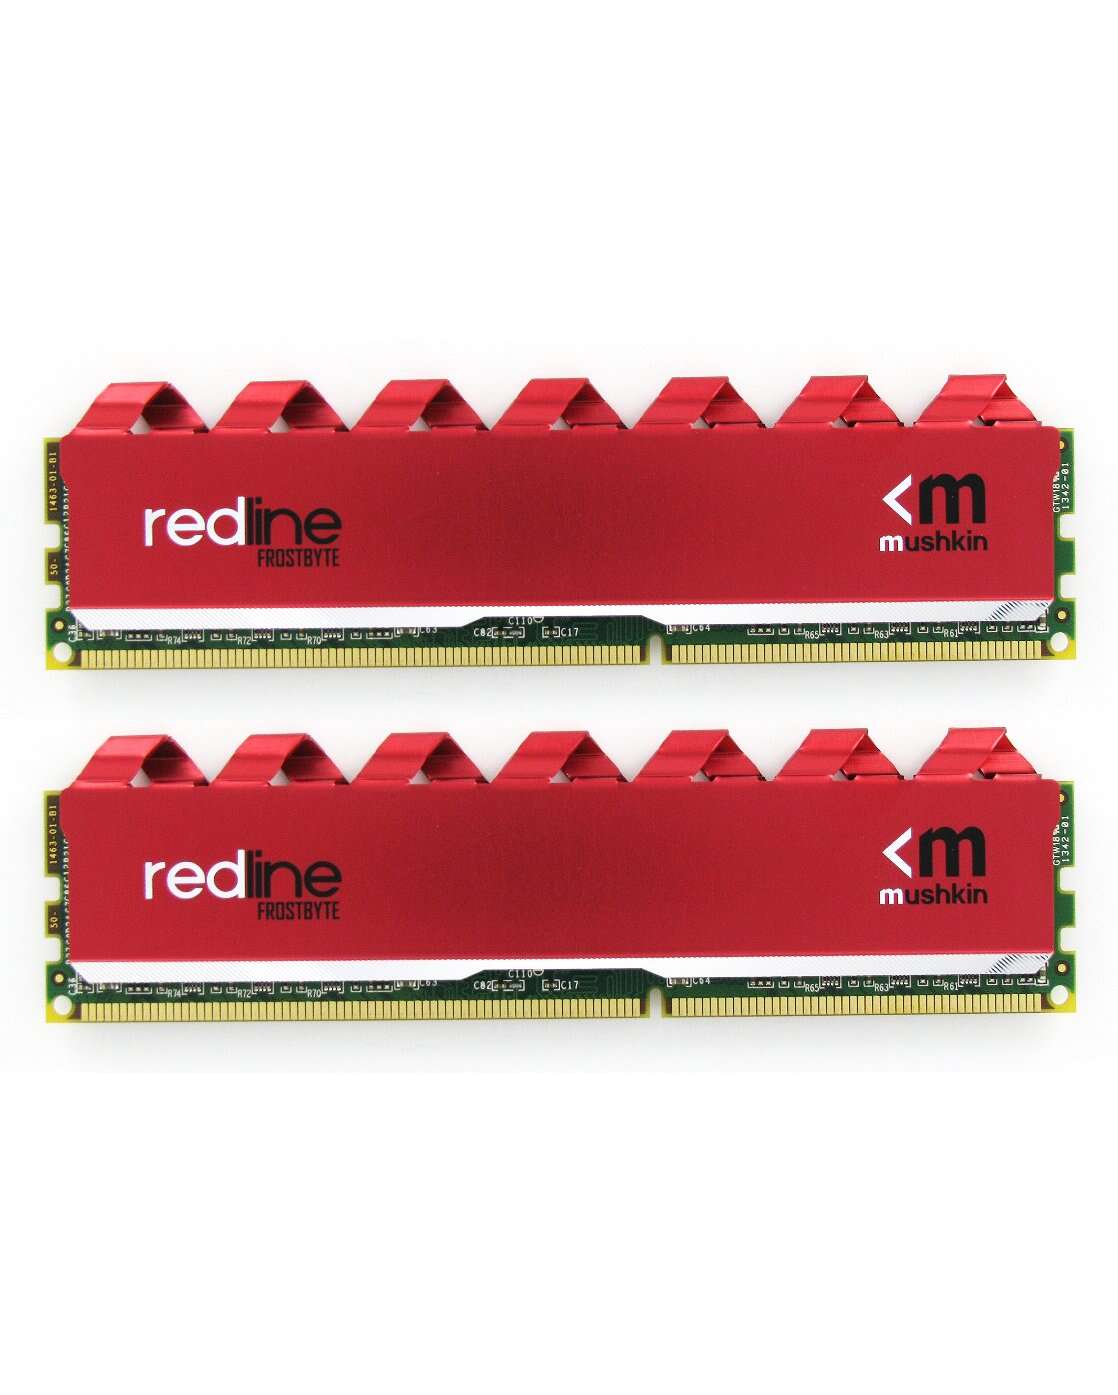 Mushkin 64gb /2800 redline ddr4 ram kit (2x32gb) piros